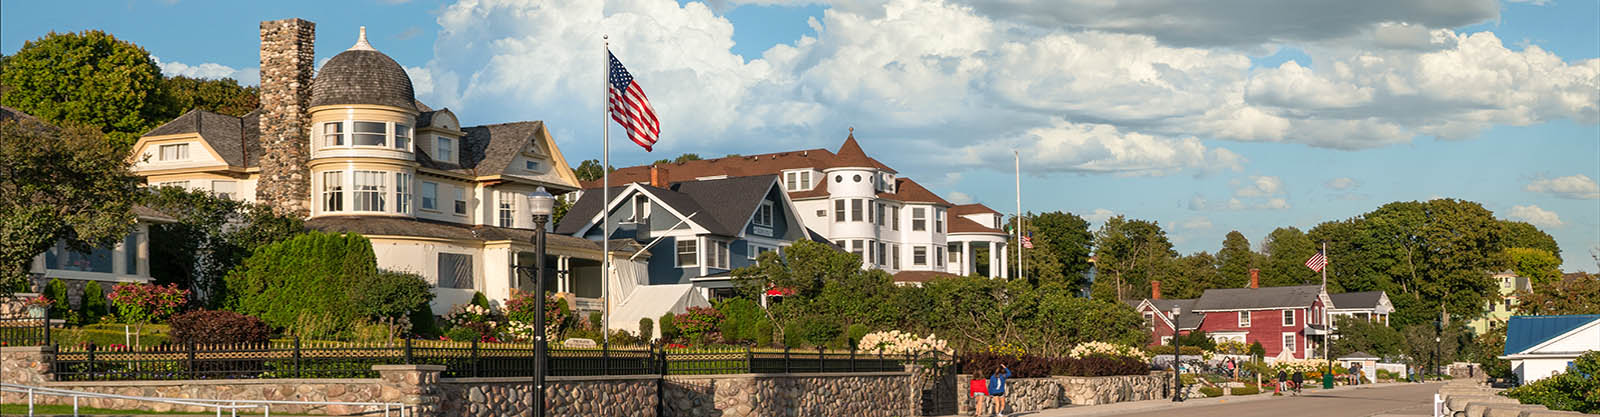 image of a patriotic coastal town